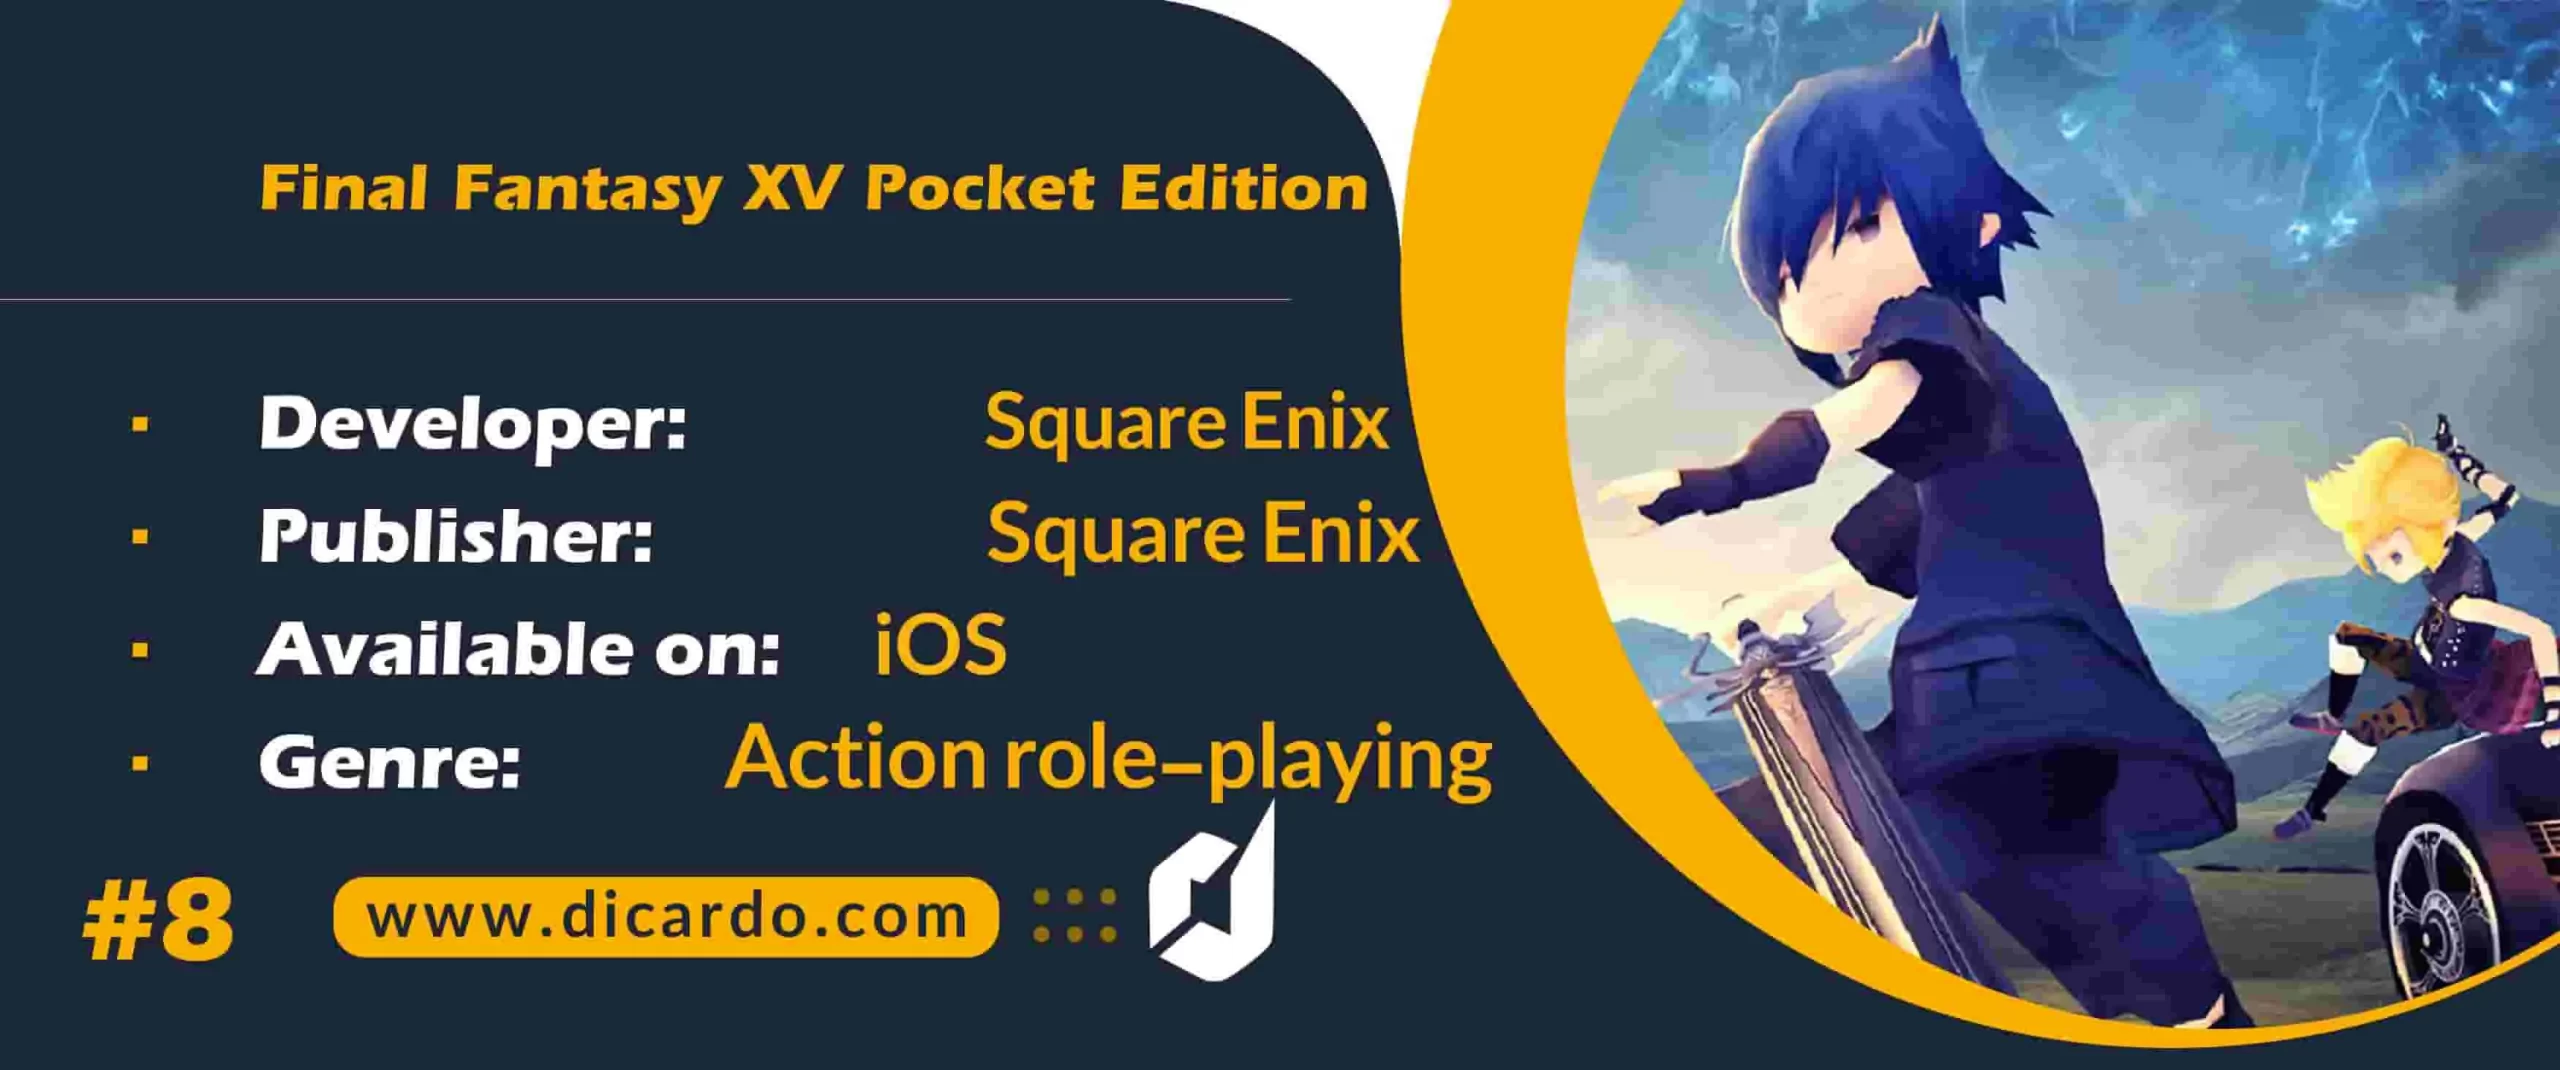 #8 فاینال فانتزی 15 پوکت ادیشن Final Fantasy XV Pocket Edition از برترین بازیهای فاینال فانتزی برای موبایل